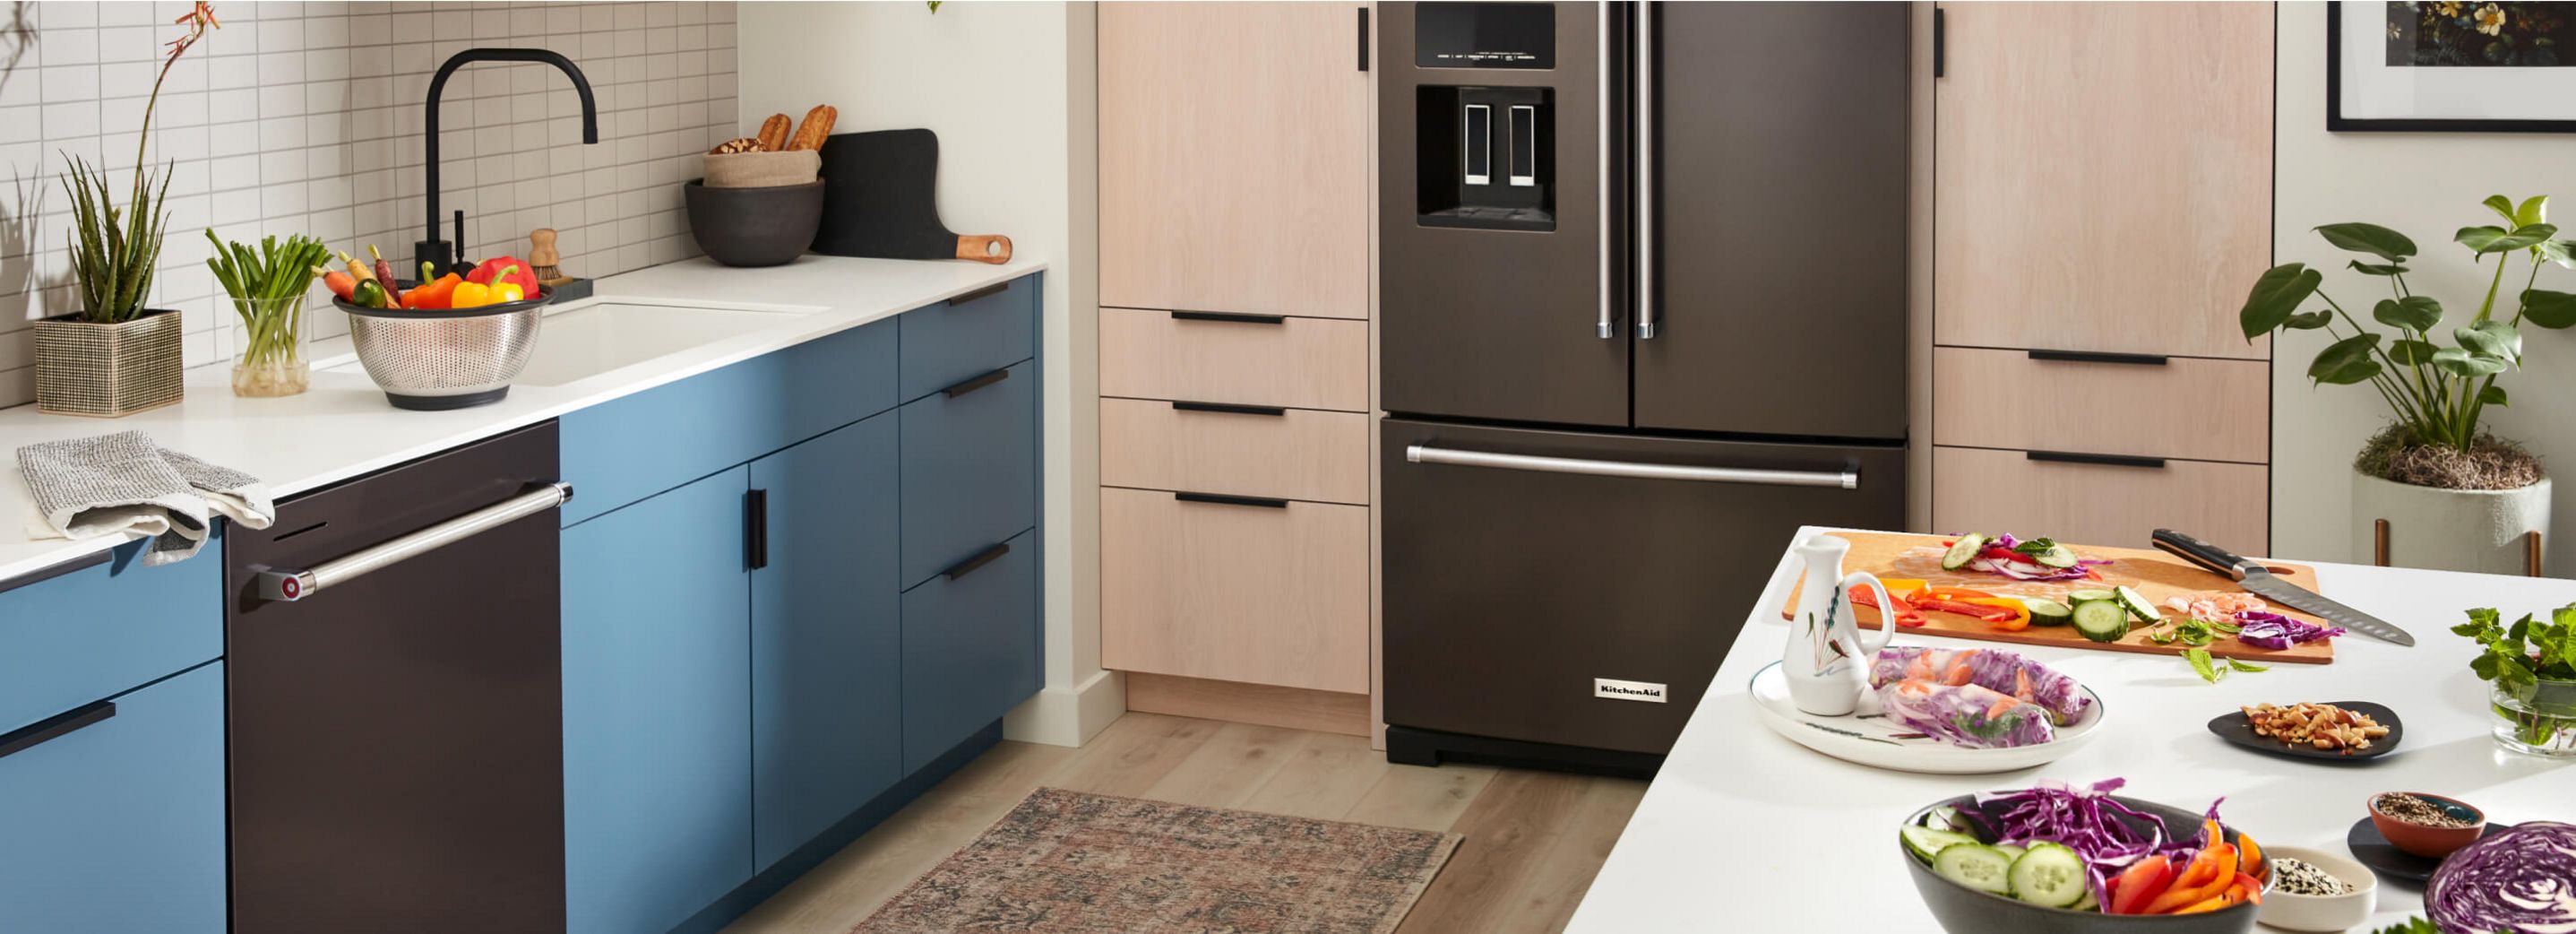 36" KitchenAid® French Door Bottom Mount Refrigerator installed in kitchen.